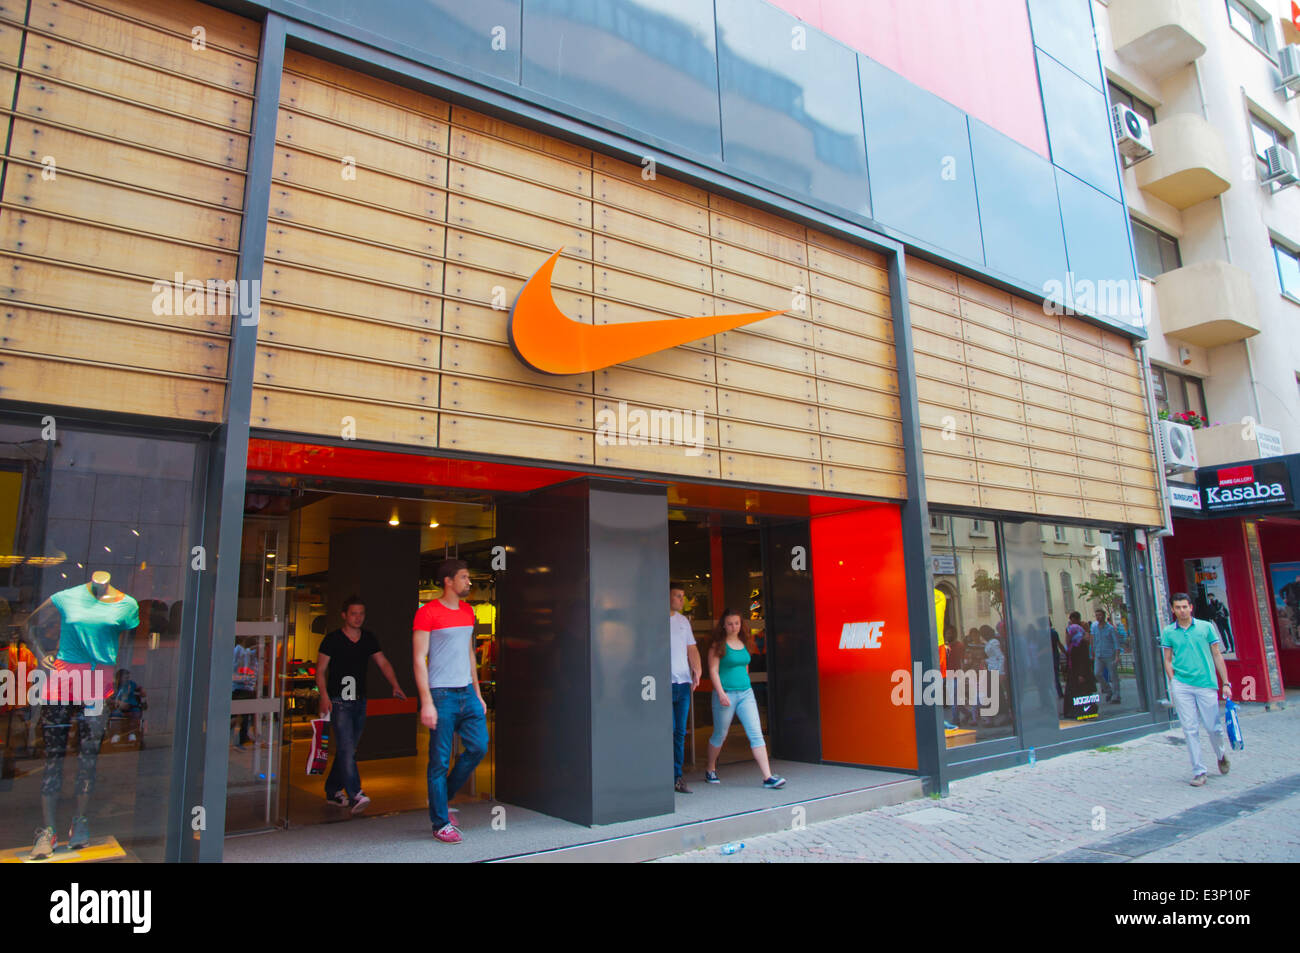 Nike Shop Immagini e Fotos Stock - Alamy